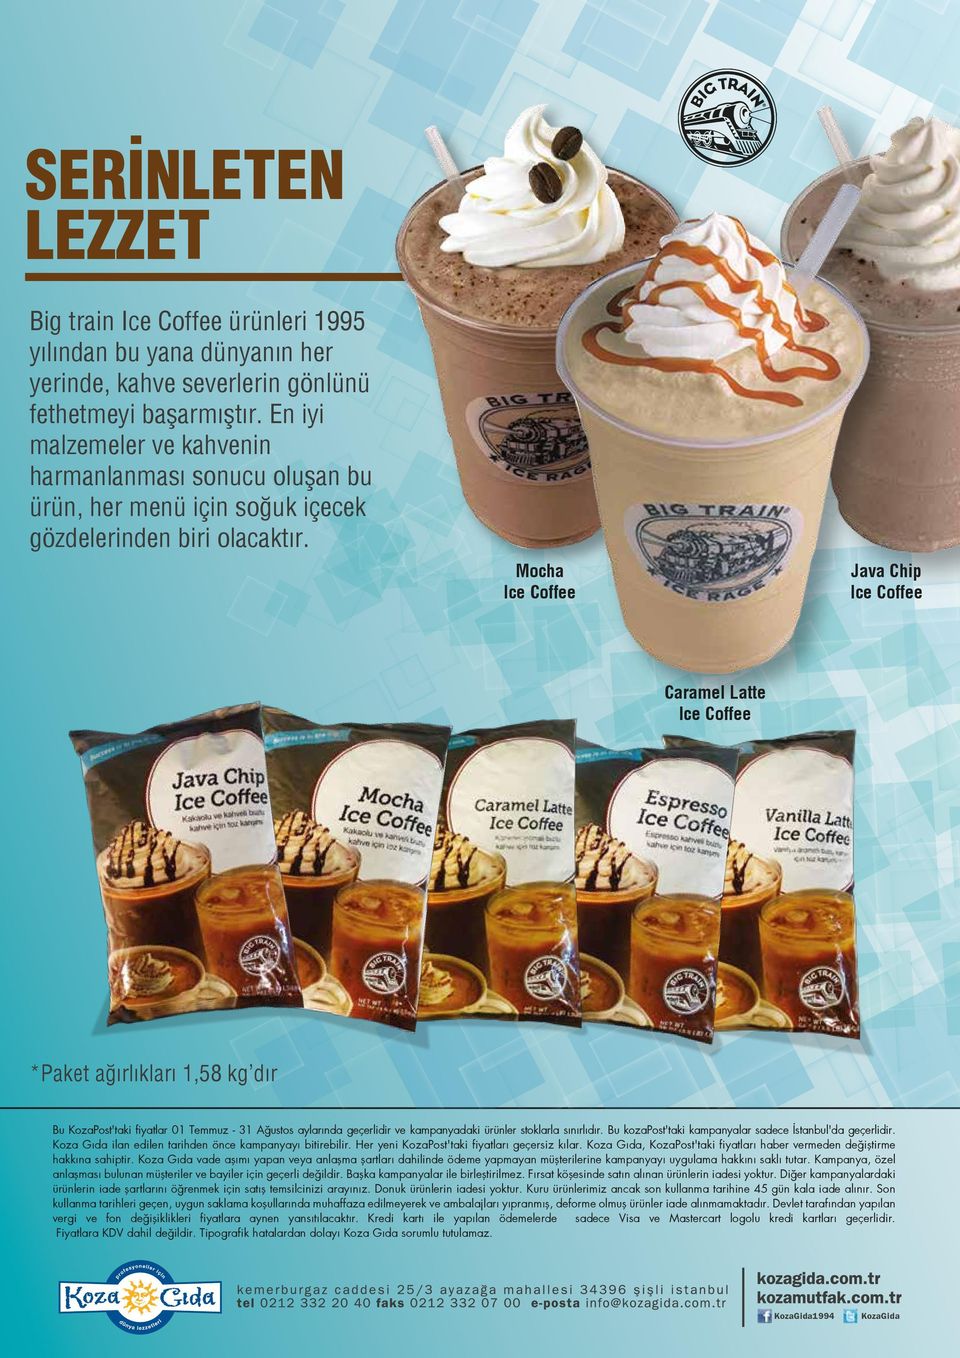 Mocha Ice Coffee Java Chip Ice Coffee Caramel Latte Ice Coffee *Paket ağırlıkları 1,58 kg dır Bu KozaPost'taki fiyatlar 01 Temmuz - 31 Ağustos aylarında geçerlidir ve kampanyadaki ürünler stoklarla